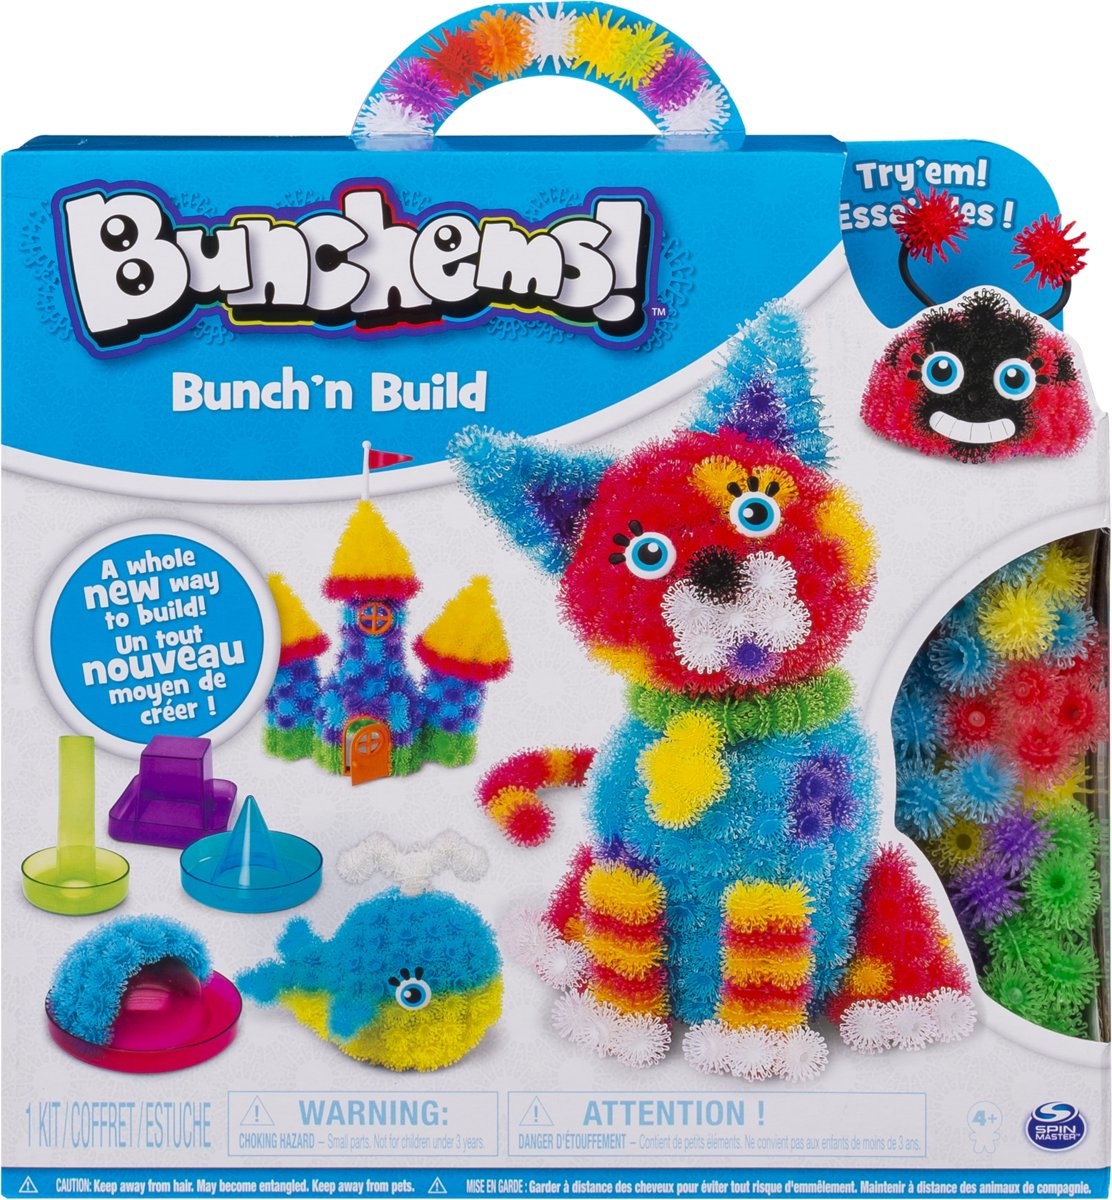 Sympton achterlijk persoon analoog Bunchems Bunch 'N Build - Knutselpakket | PS Toys